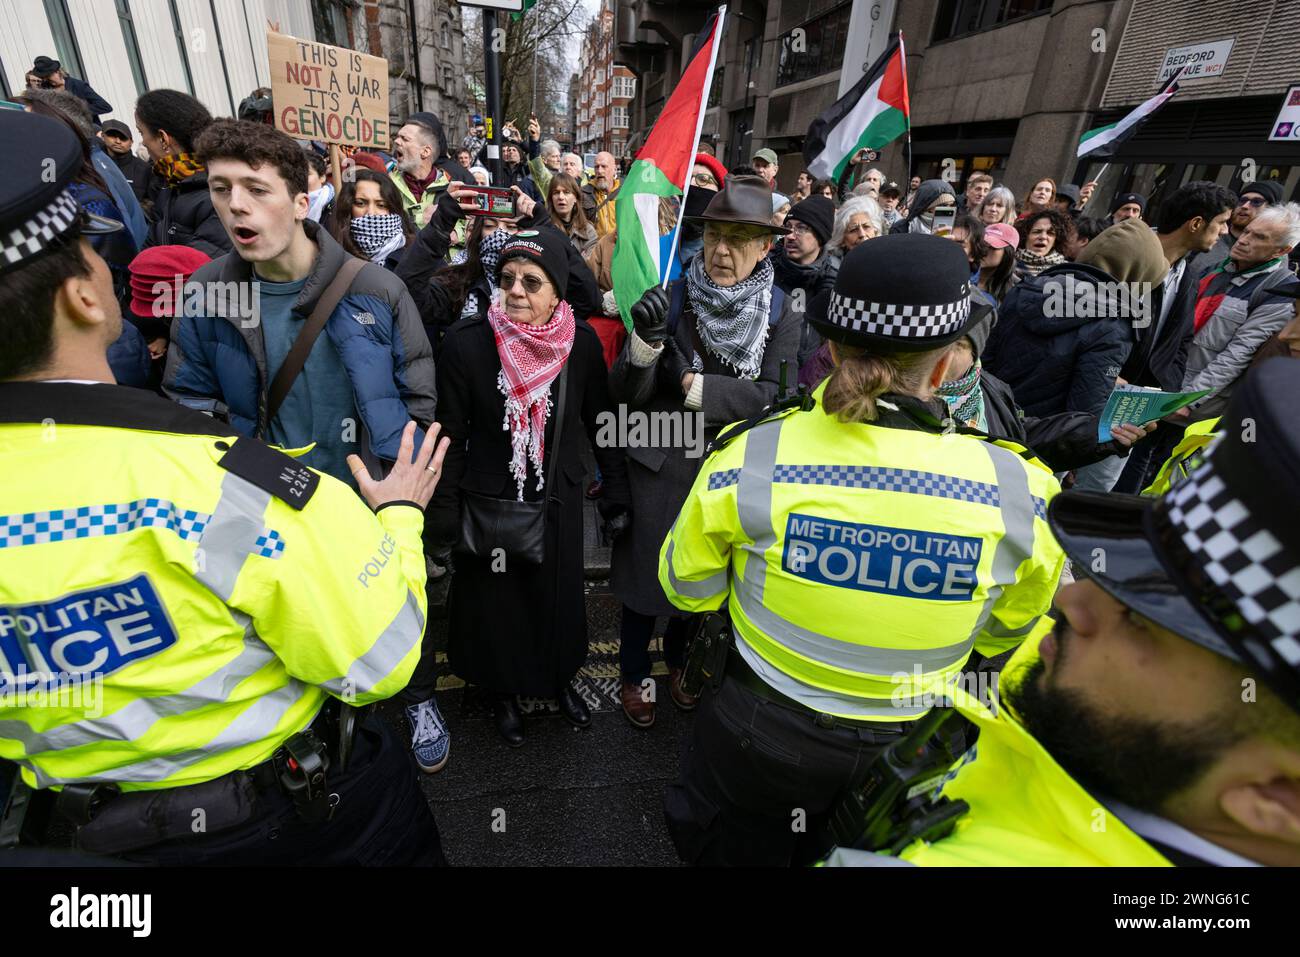 Des activistes pro-Palestine devant Barclays Bank sur Tottenham court Road protestent contre les investissements de la banque dans des sociétés fournissant des armes à Israël, au Royaume-Uni Banque D'Images